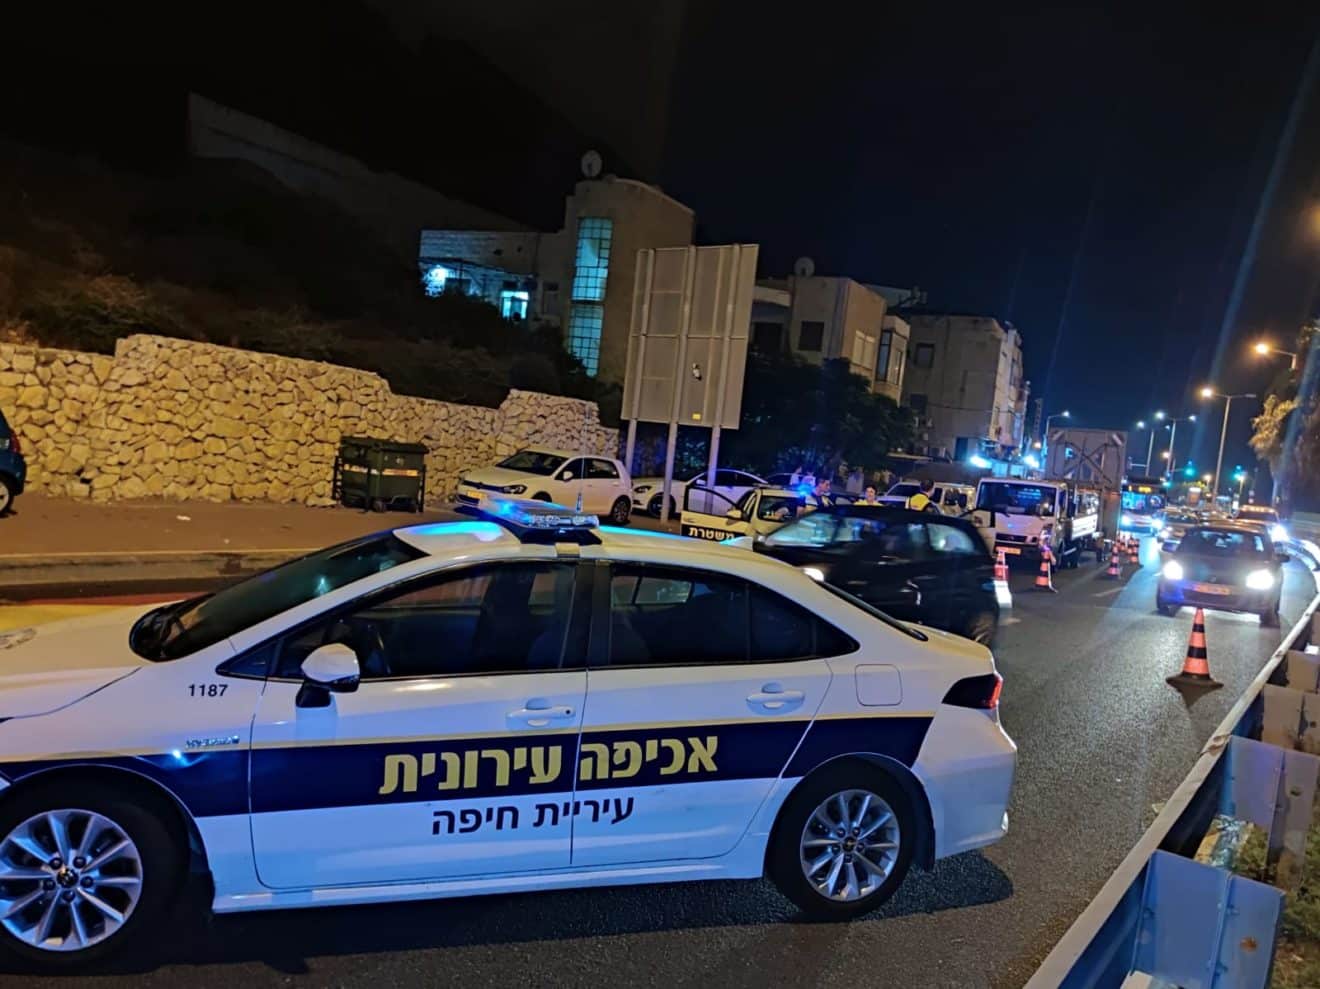 חיפה: מבצע כנגד רכבים משופרים ופקקי ענק בעיר | צפו בסיקור מהשטח